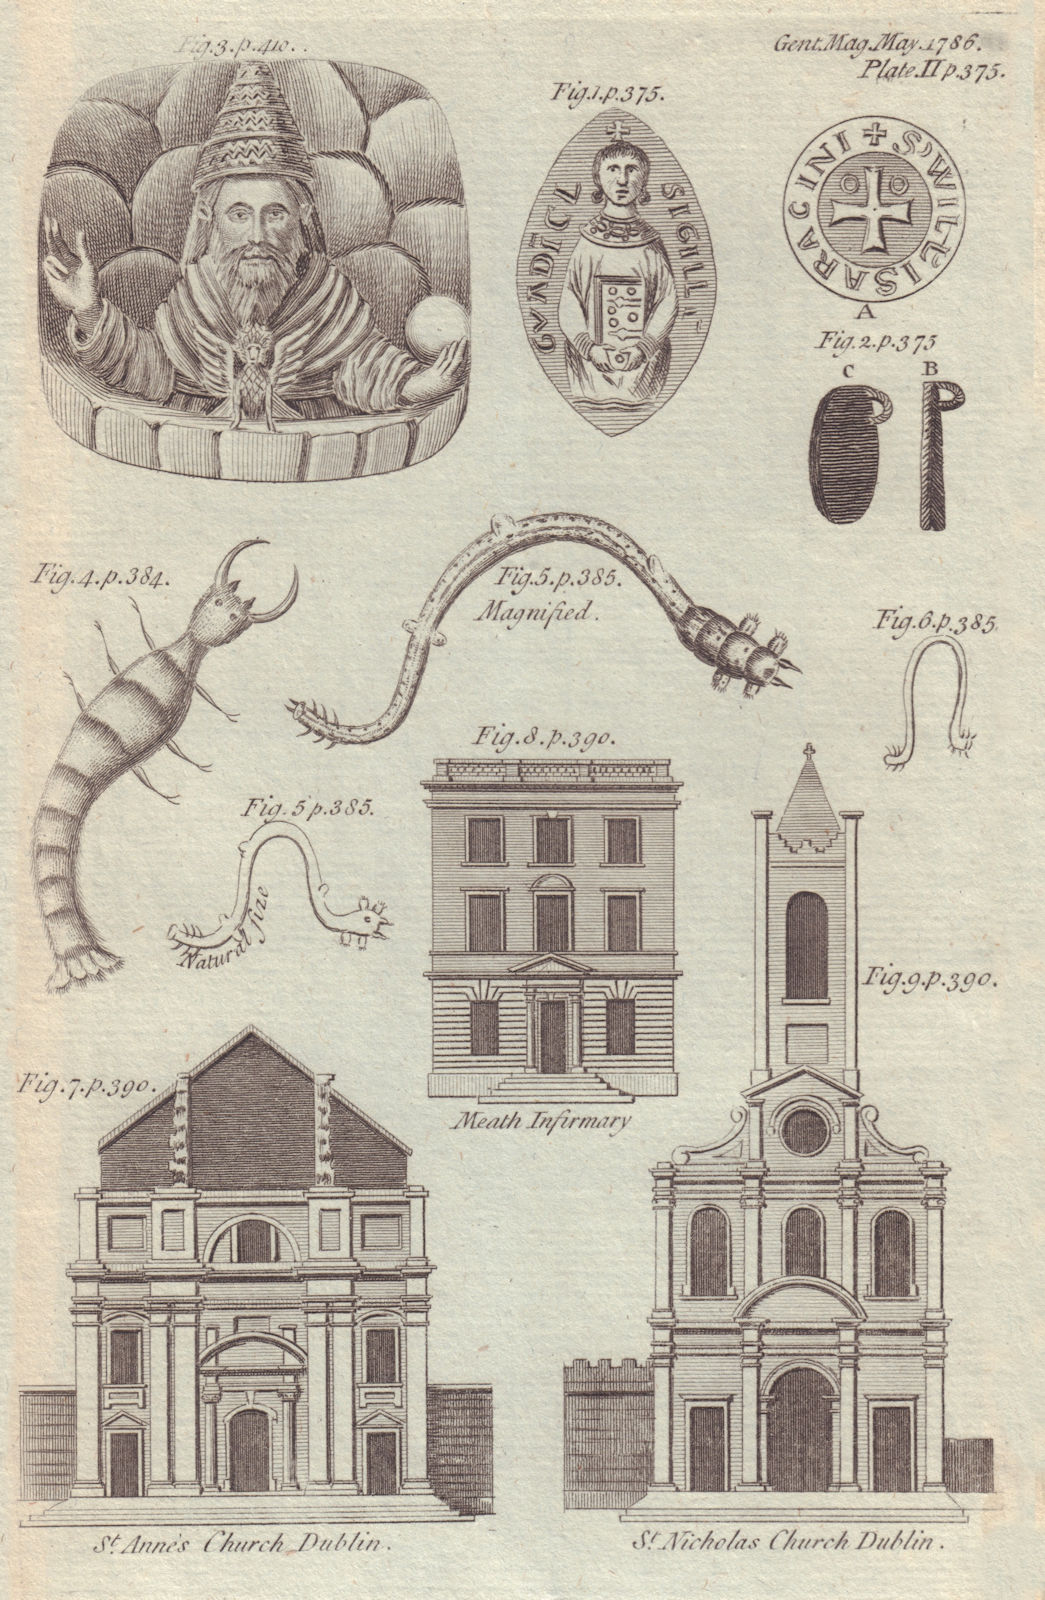 St. Ann's, Dawson St. & St. Nicholas Church, Dublin. Meath Infirmary 1786